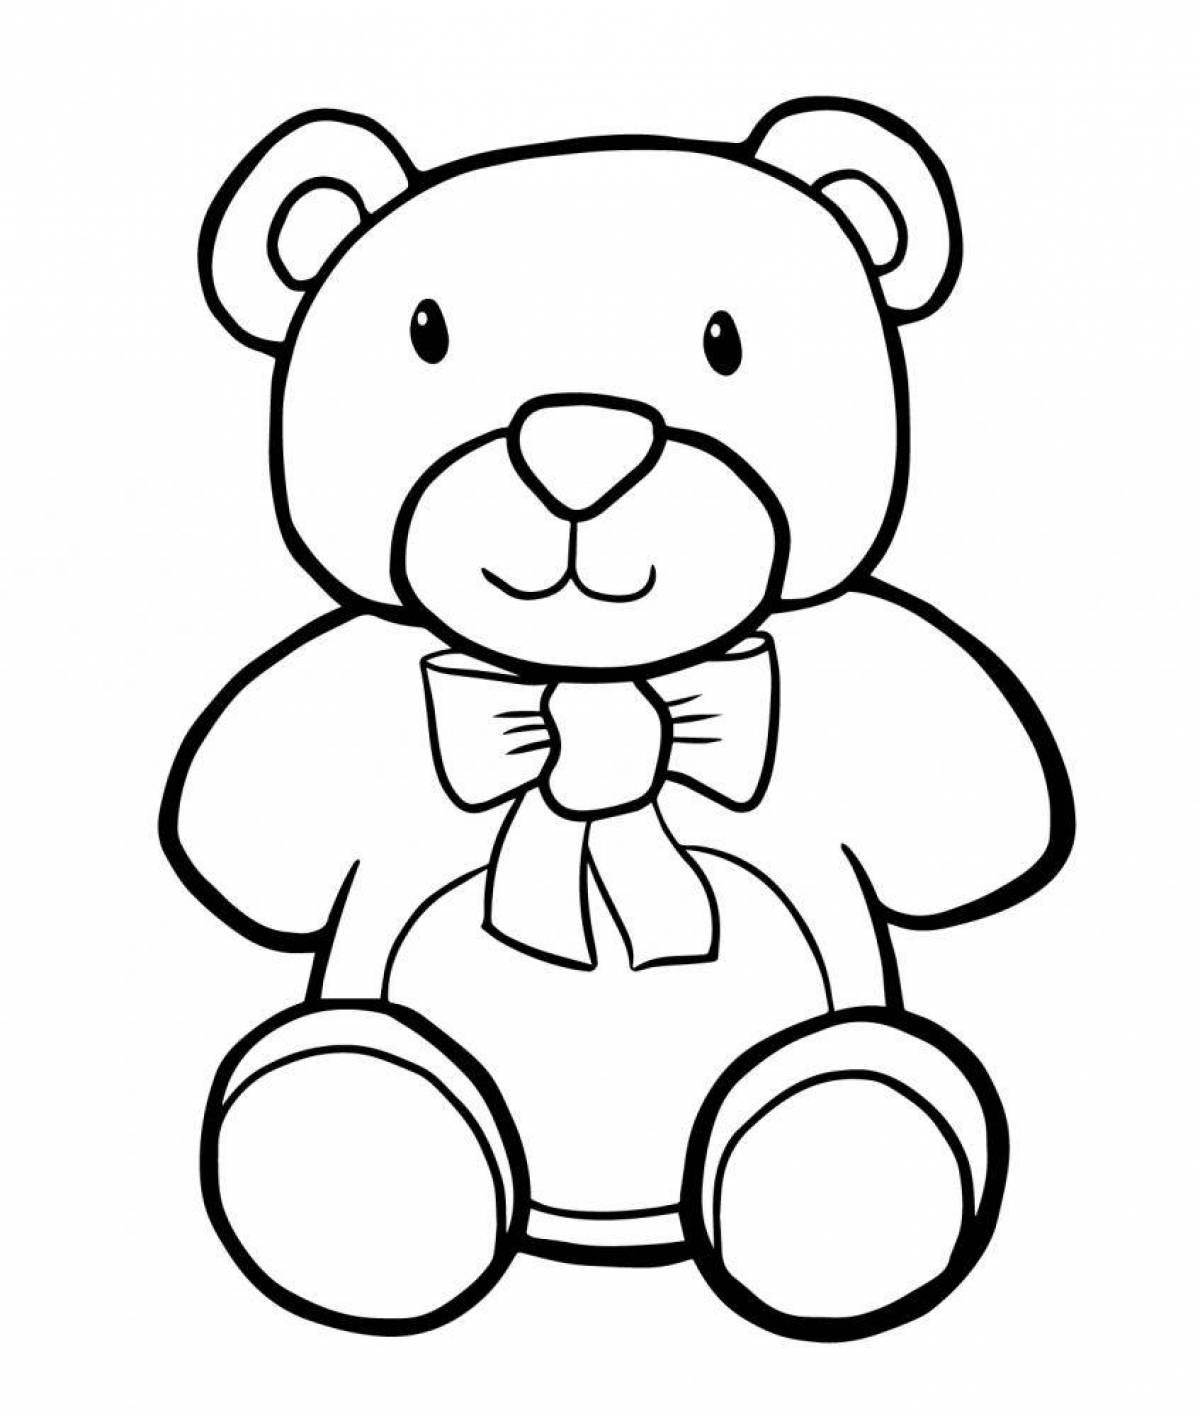 Медвежонок-раскраска huggable